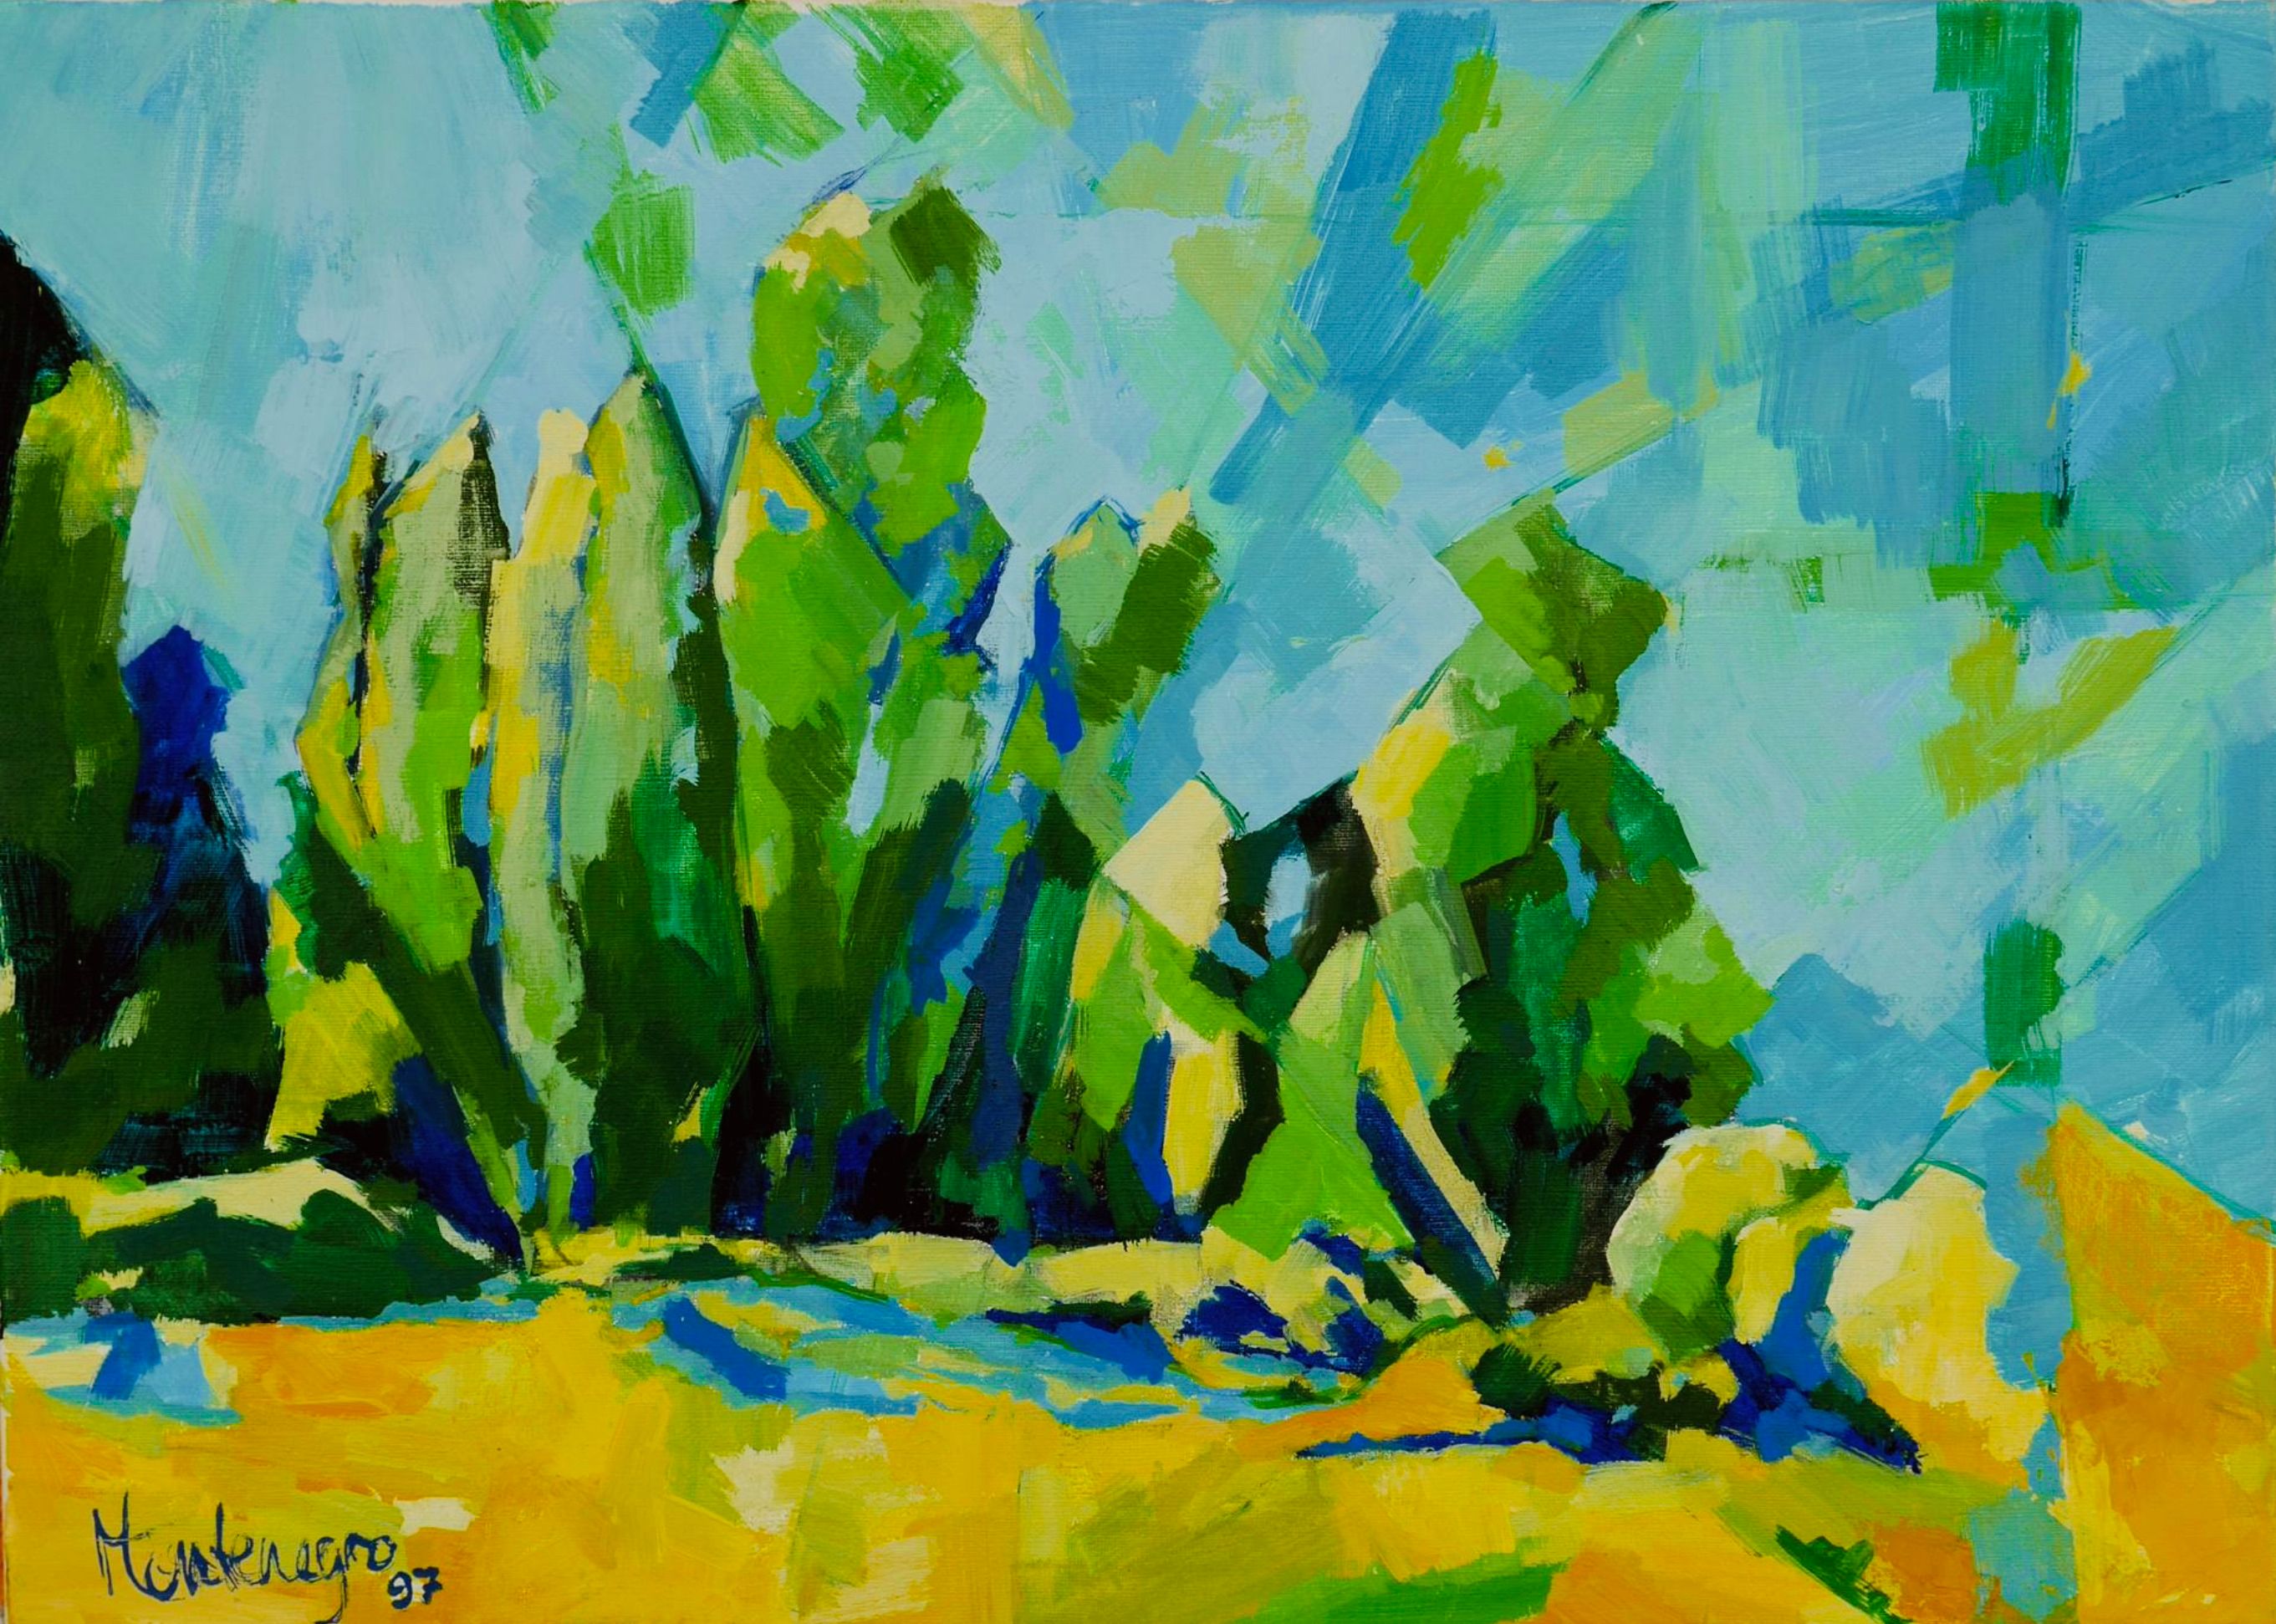 米里亚姆-黑山的表现主义绘画《绿色植物的风景》。